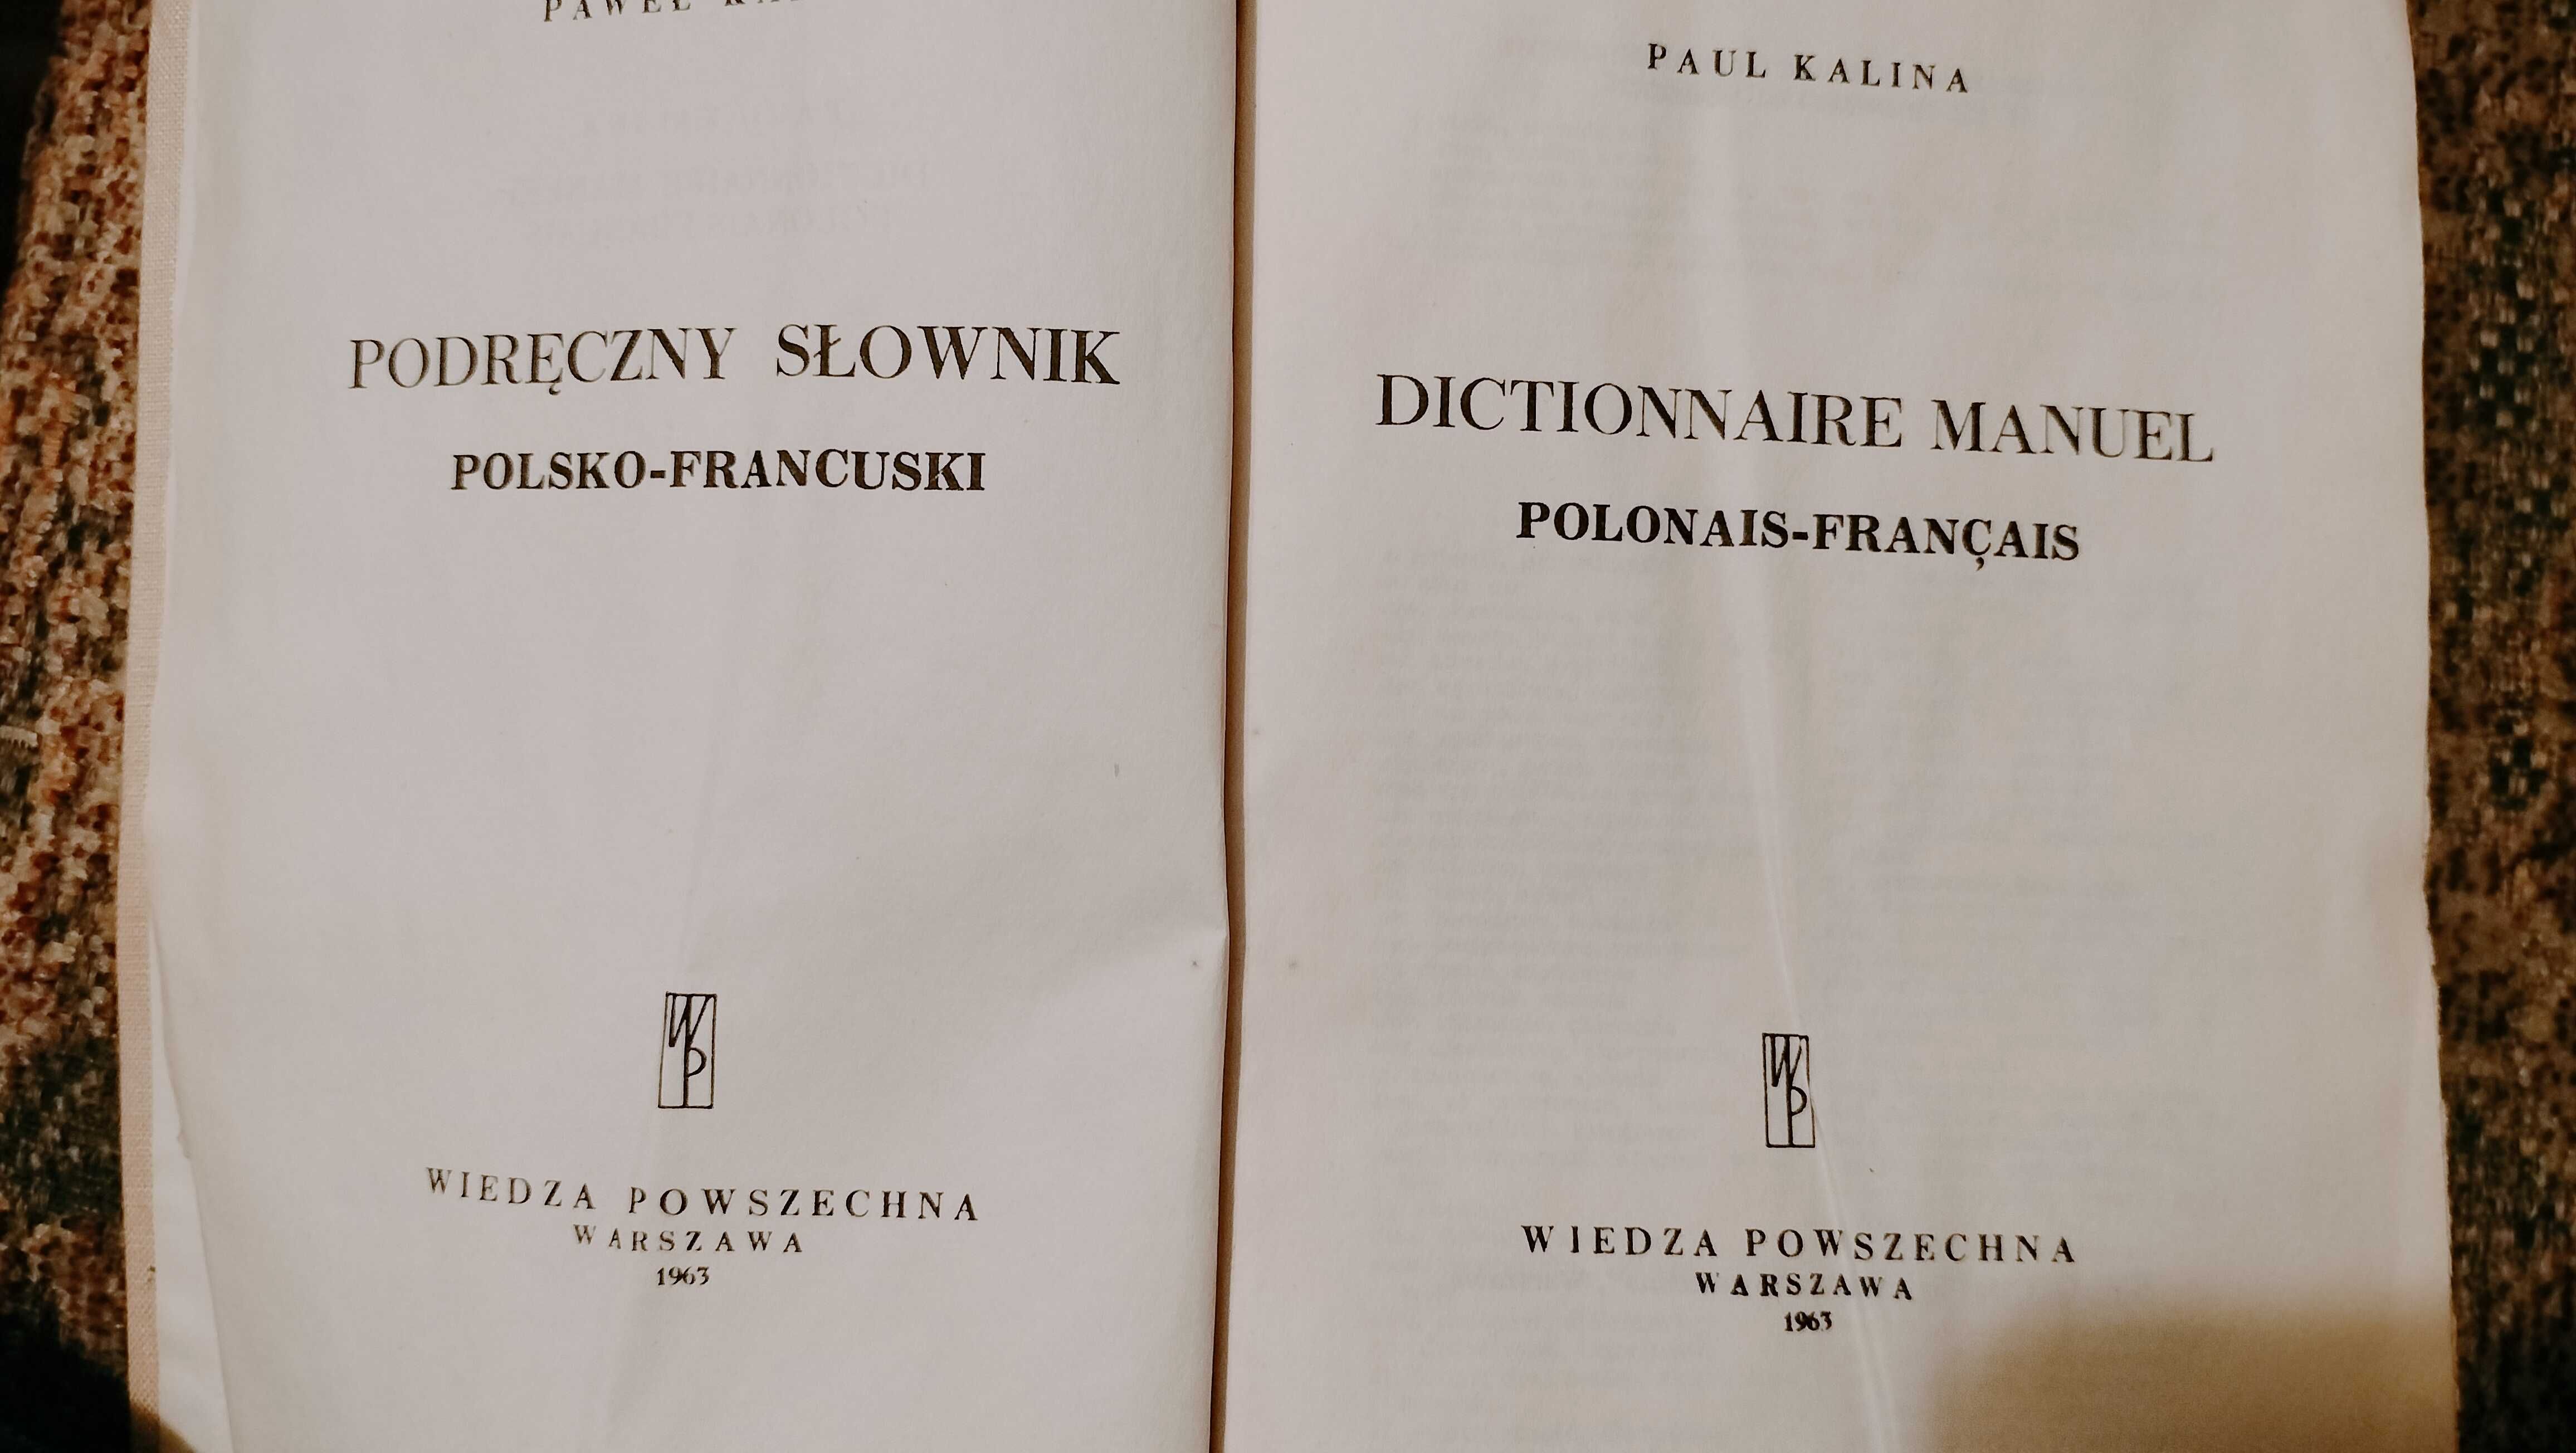 Paul Kalina-podręczny słownik posko-francuski